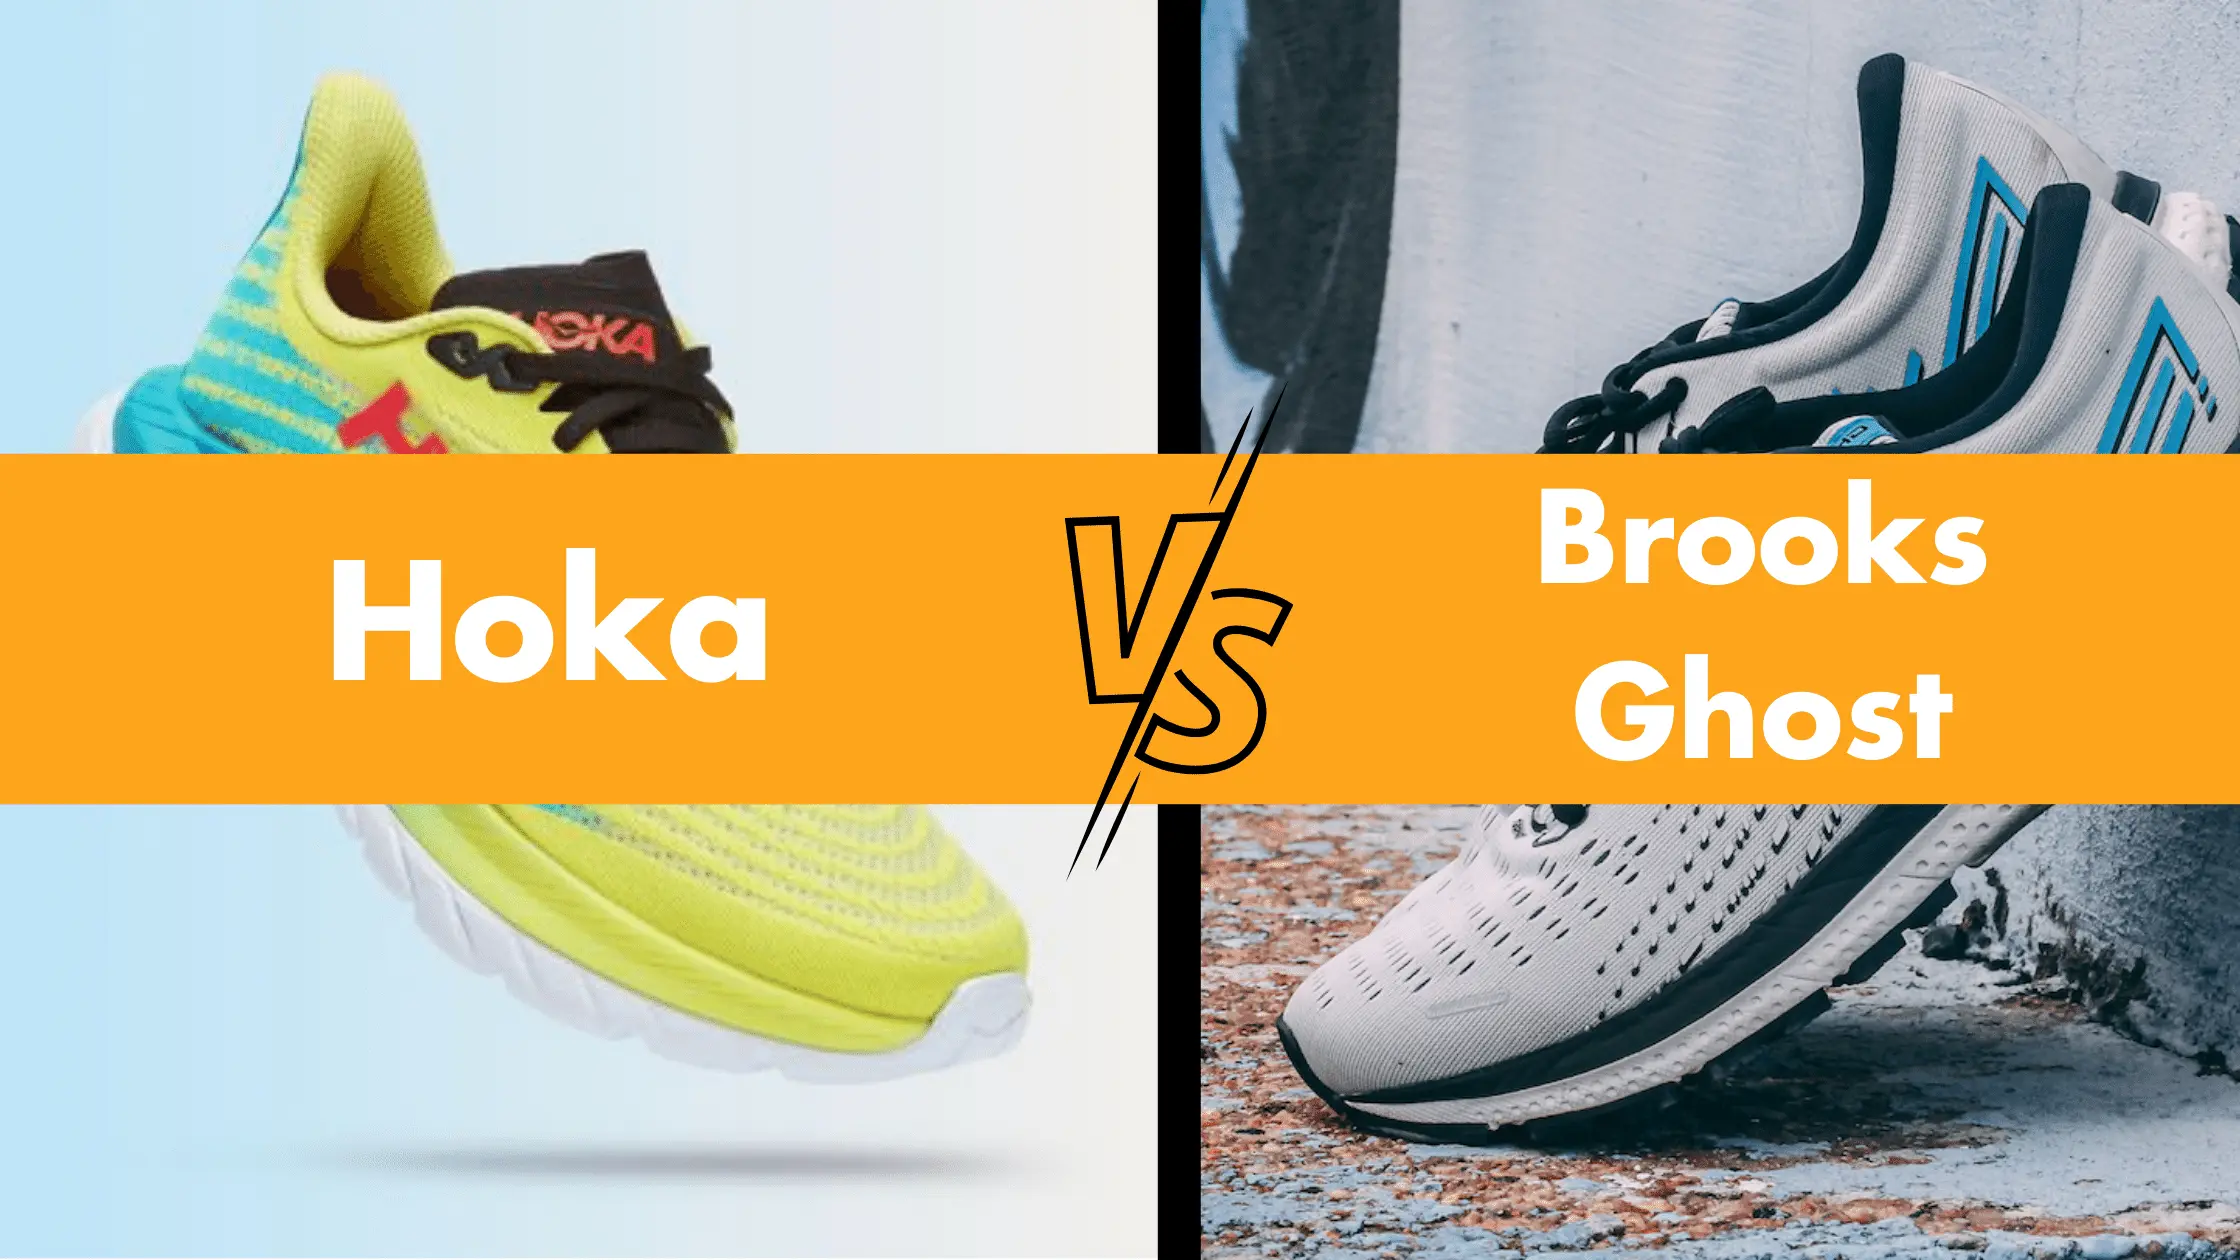 Hoka VS Brooks Ghost